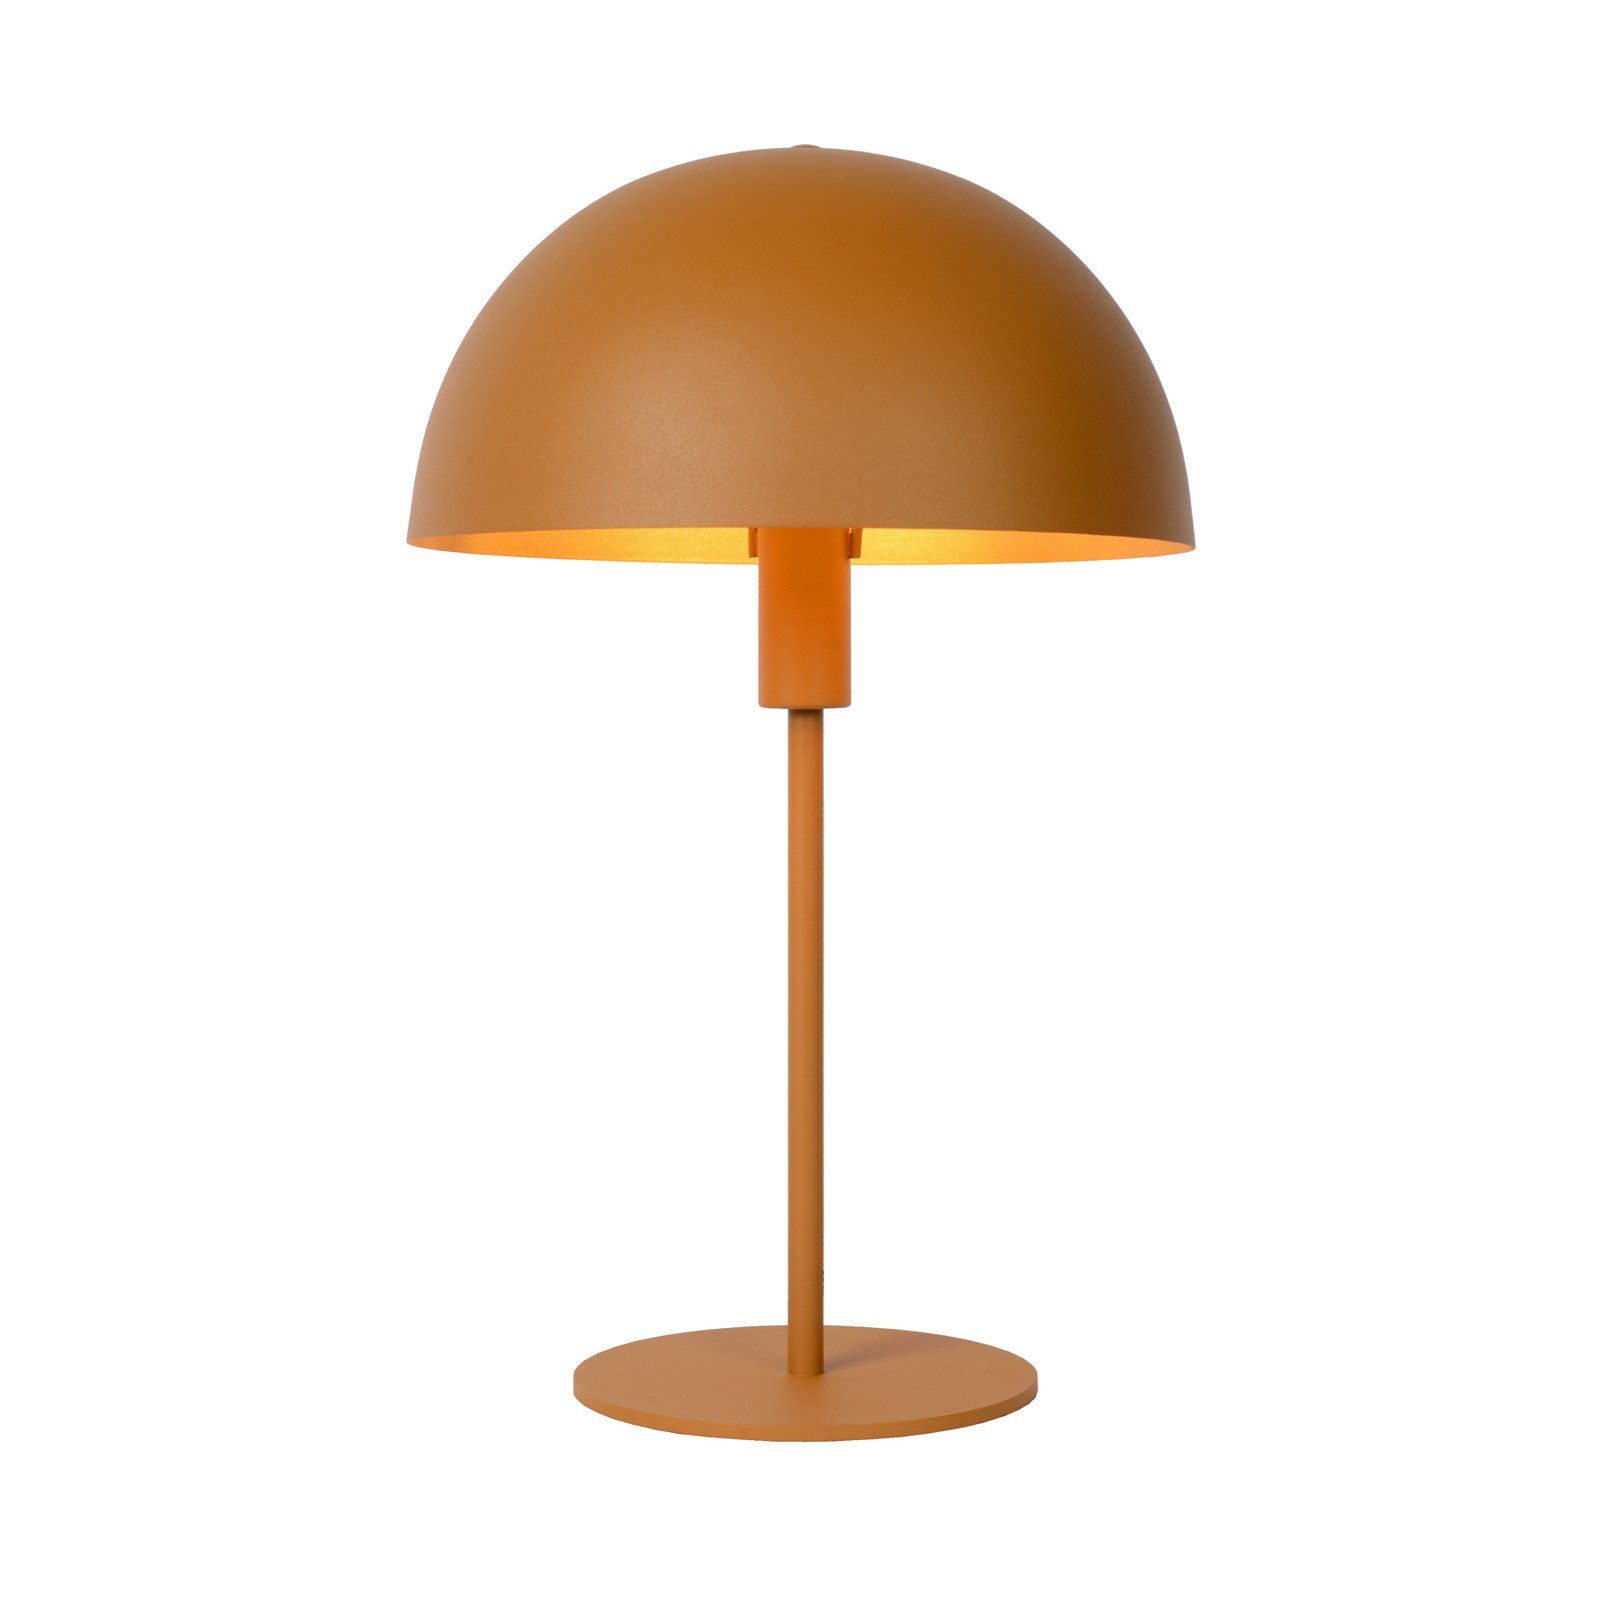 Siemon tērauda galda lampa, Ø 25 cm, okera, dzeltena